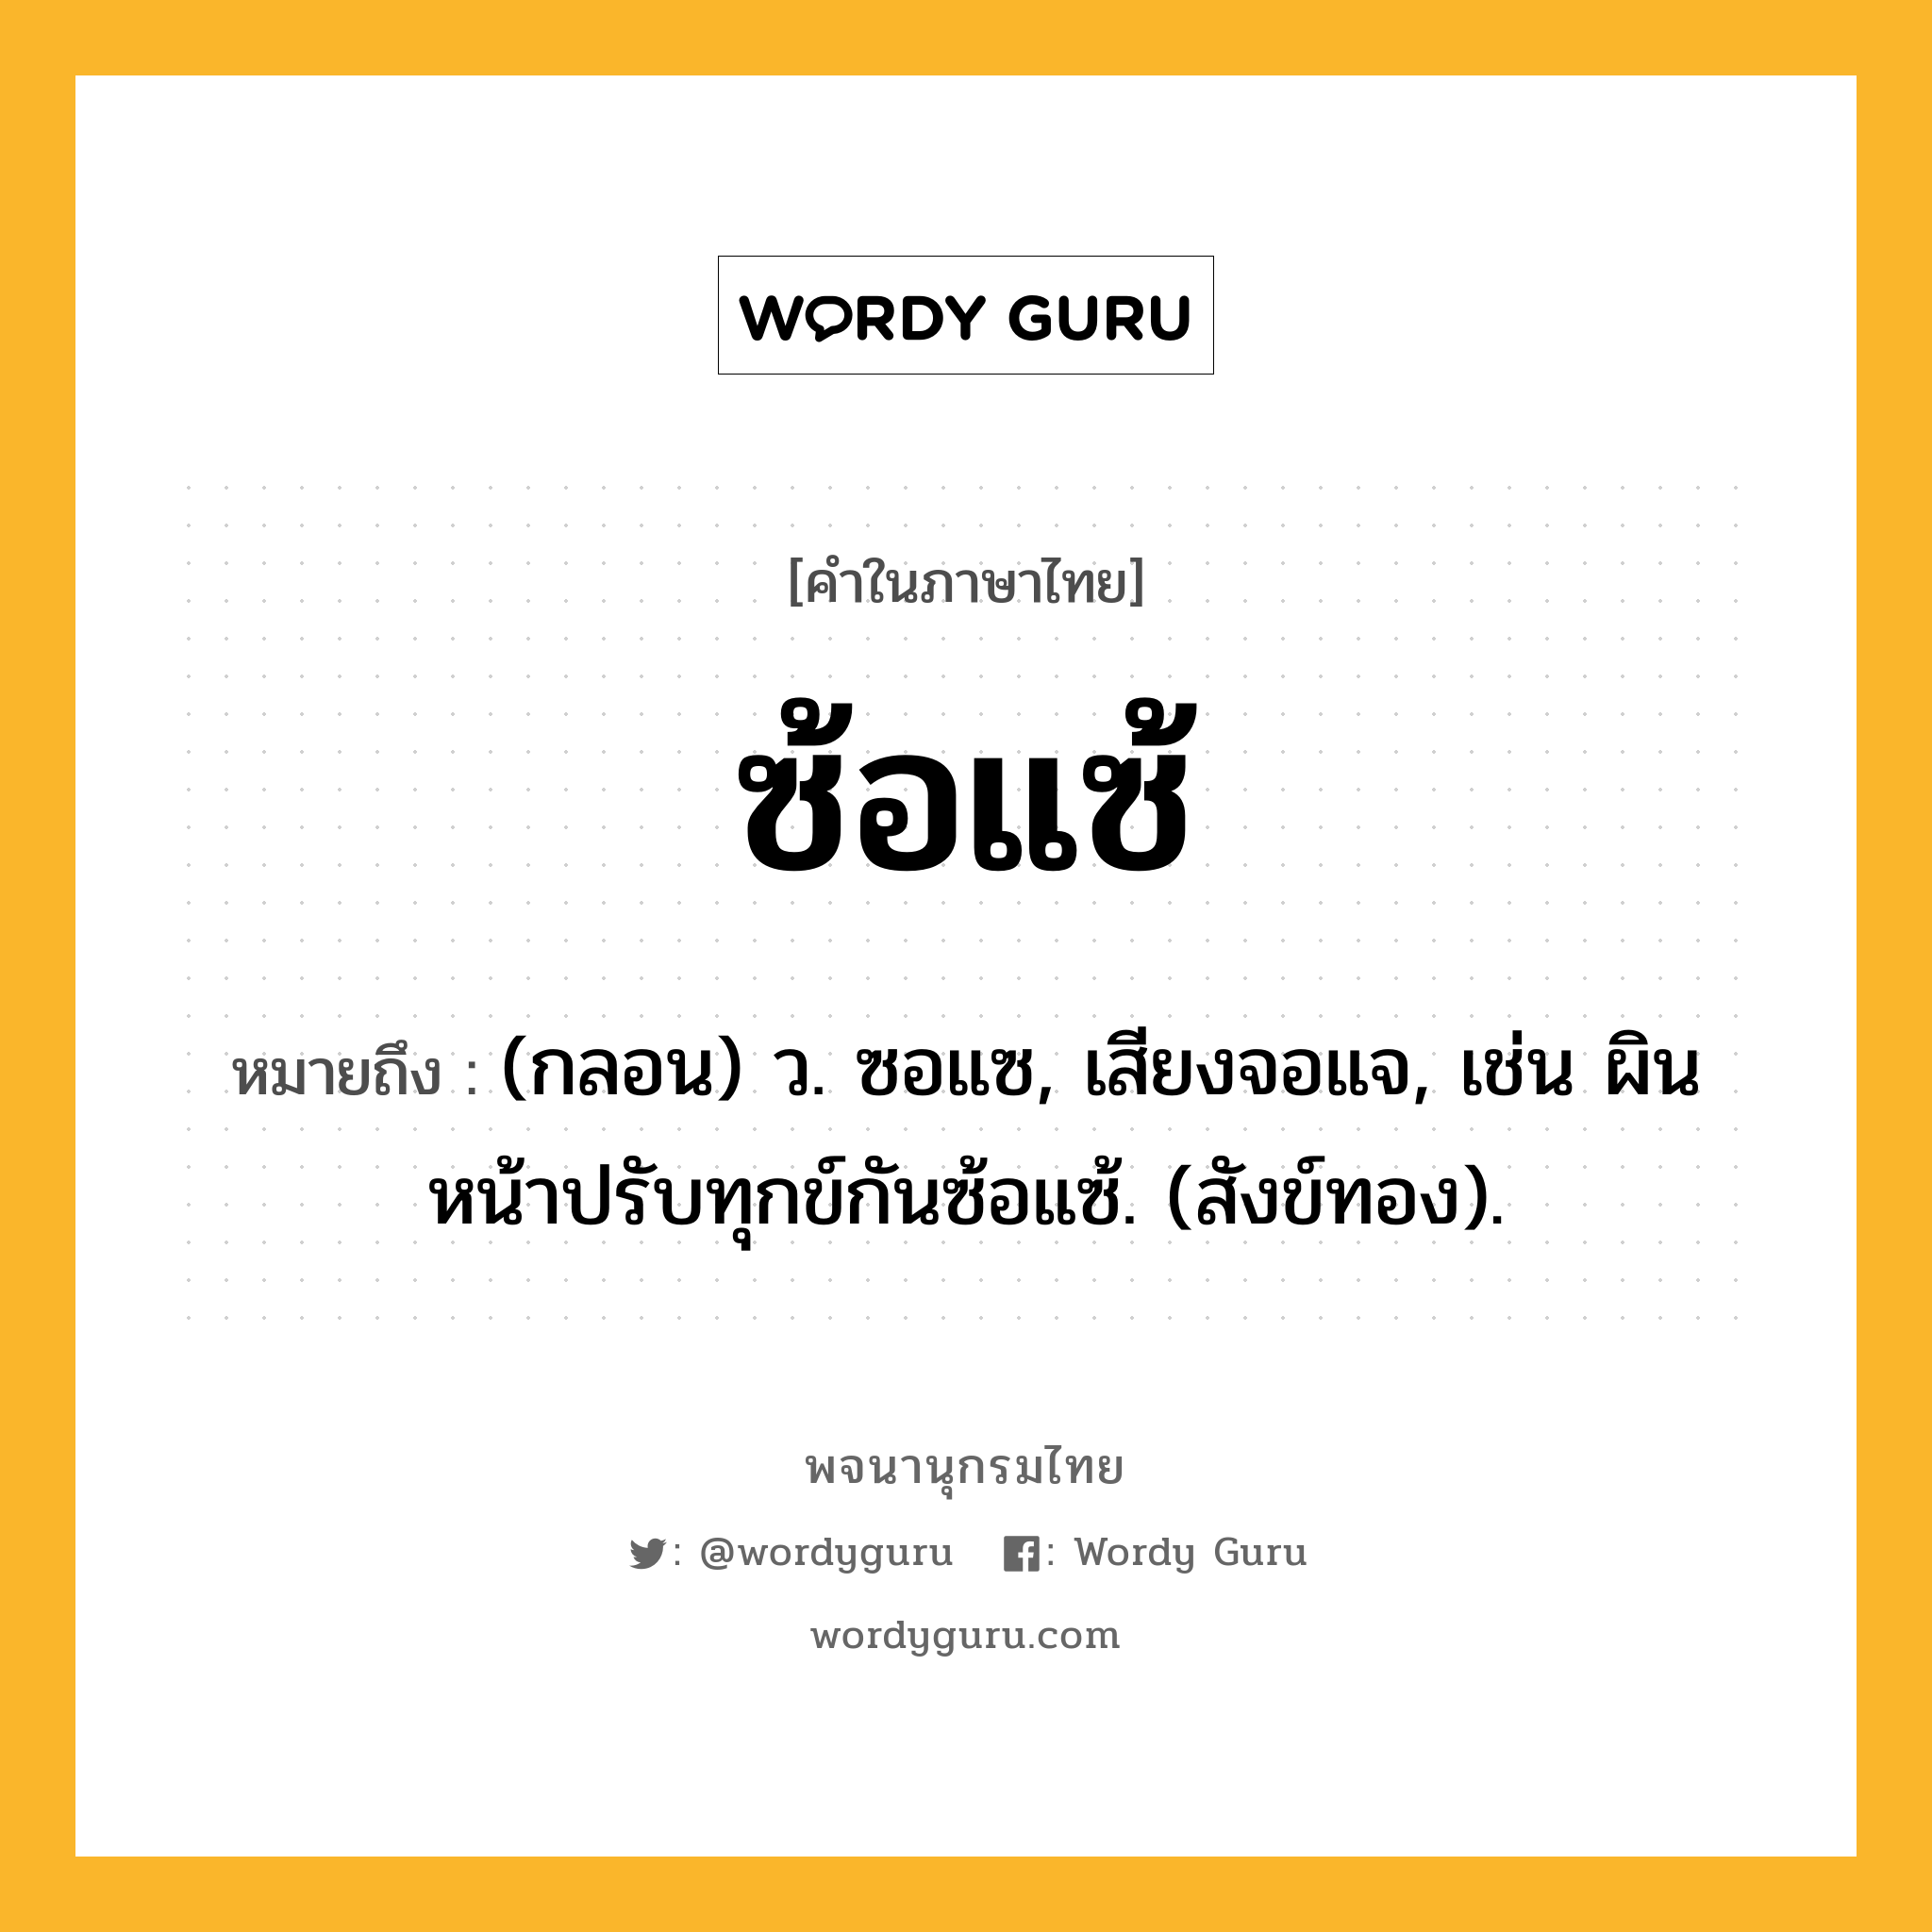 ซ้อแซ้ หมายถึงอะไร?, คำในภาษาไทย ซ้อแซ้ หมายถึง (กลอน) ว. ซอแซ, เสียงจอแจ, เช่น ผินหน้าปรับทุกข์กันซ้อแซ้. (สังข์ทอง).